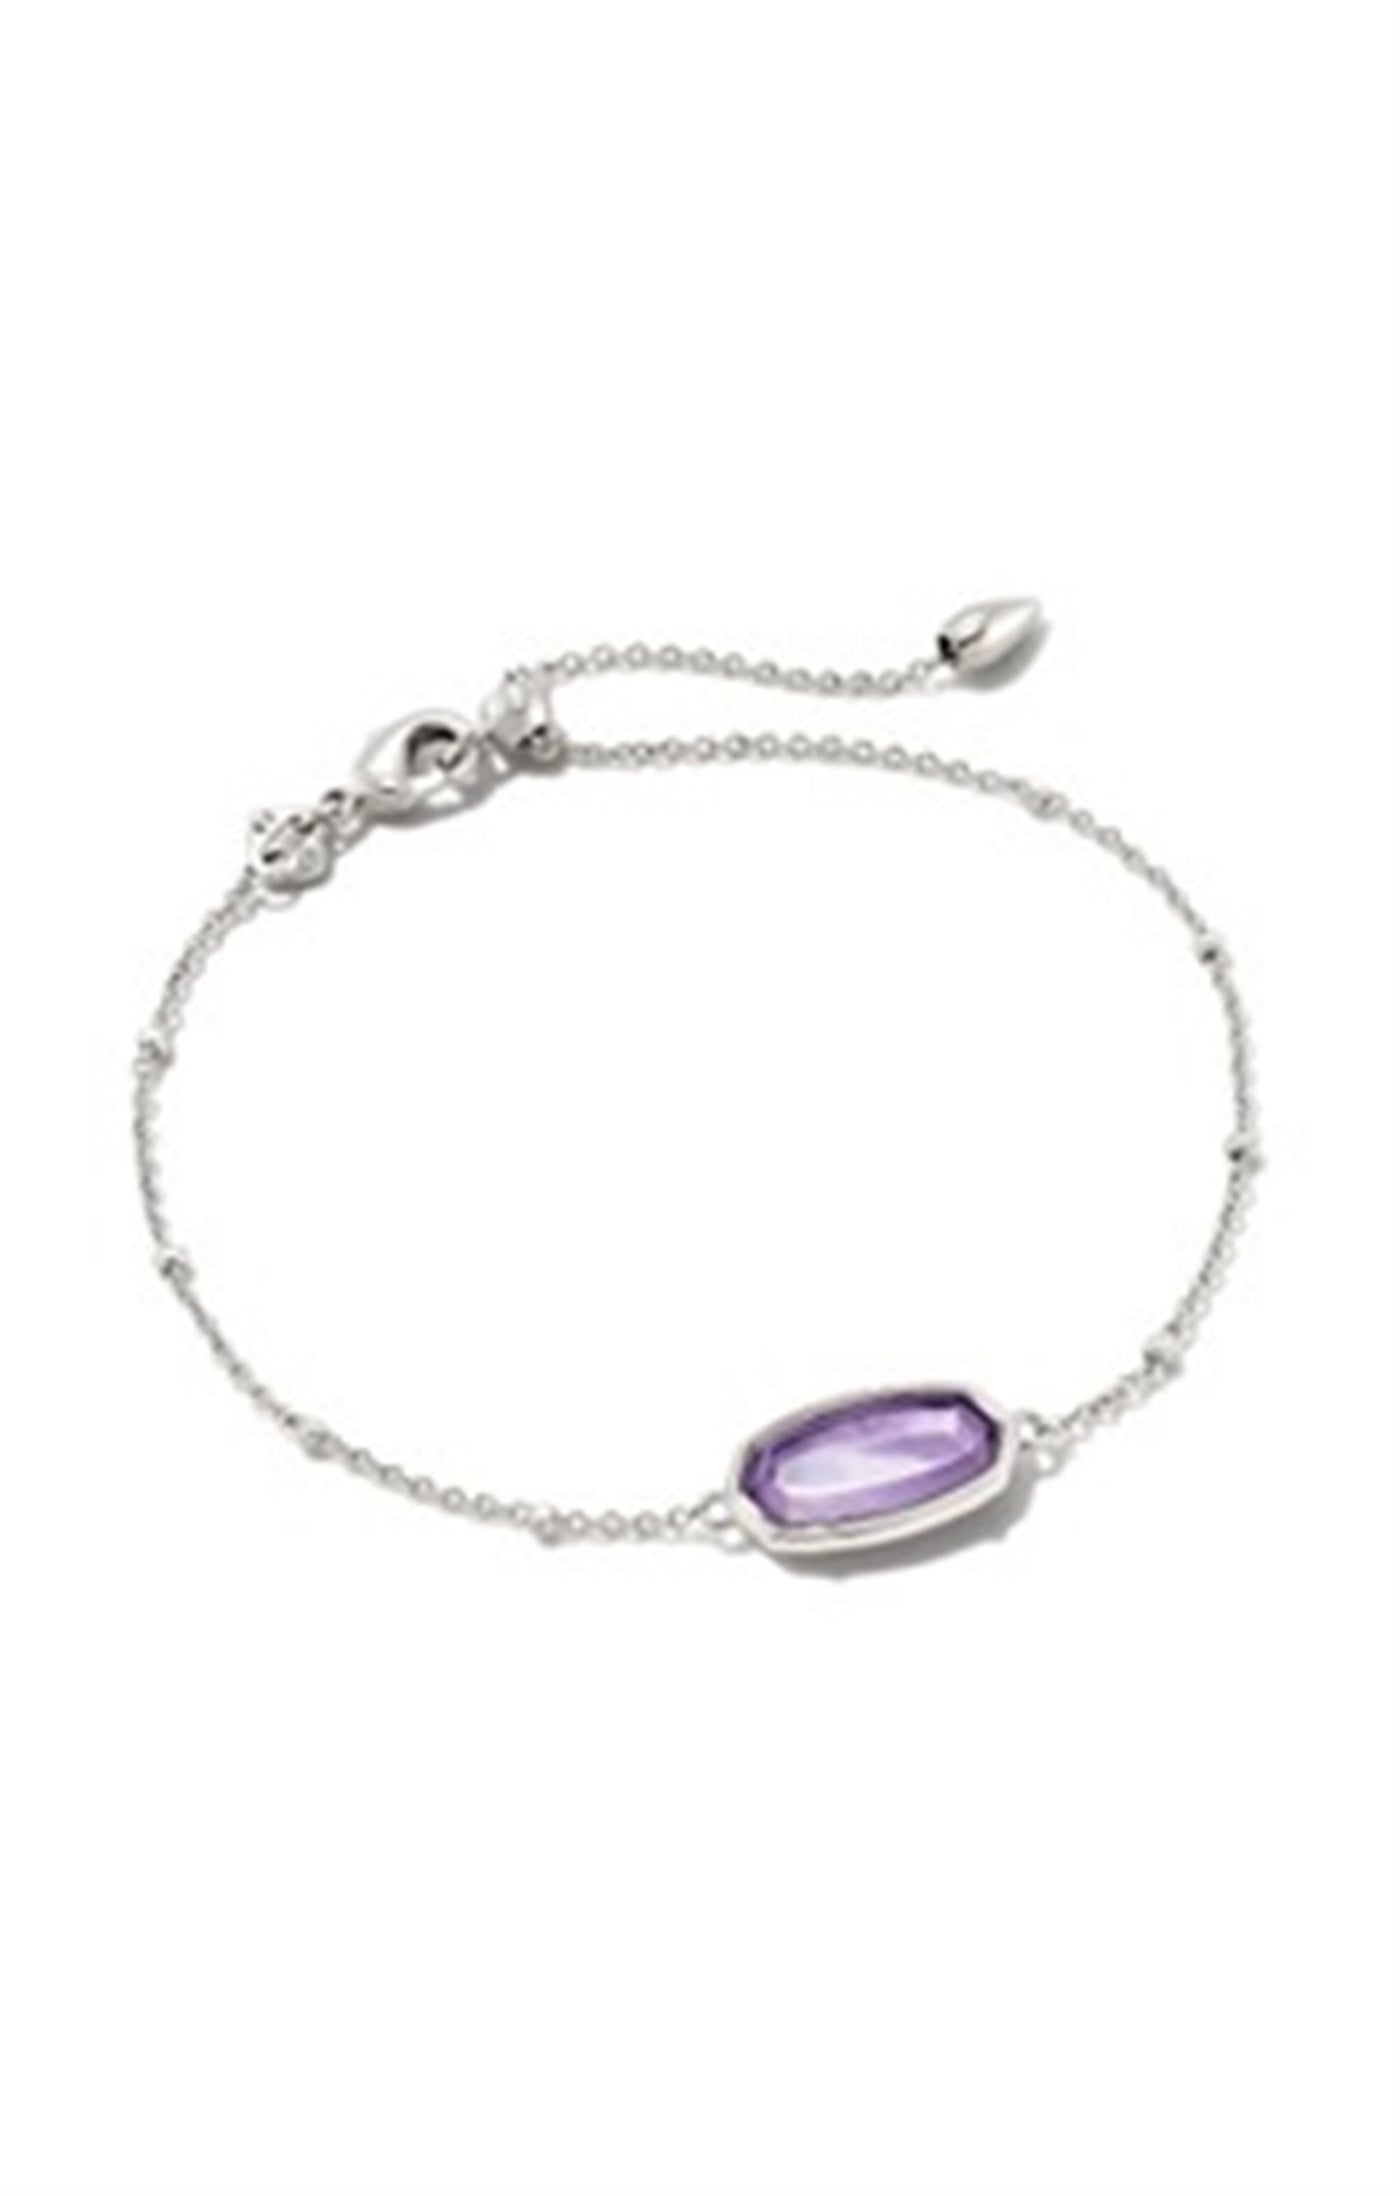 Silver Tone Bracelet Featuring Lavendar Opalite by Kendra Scott